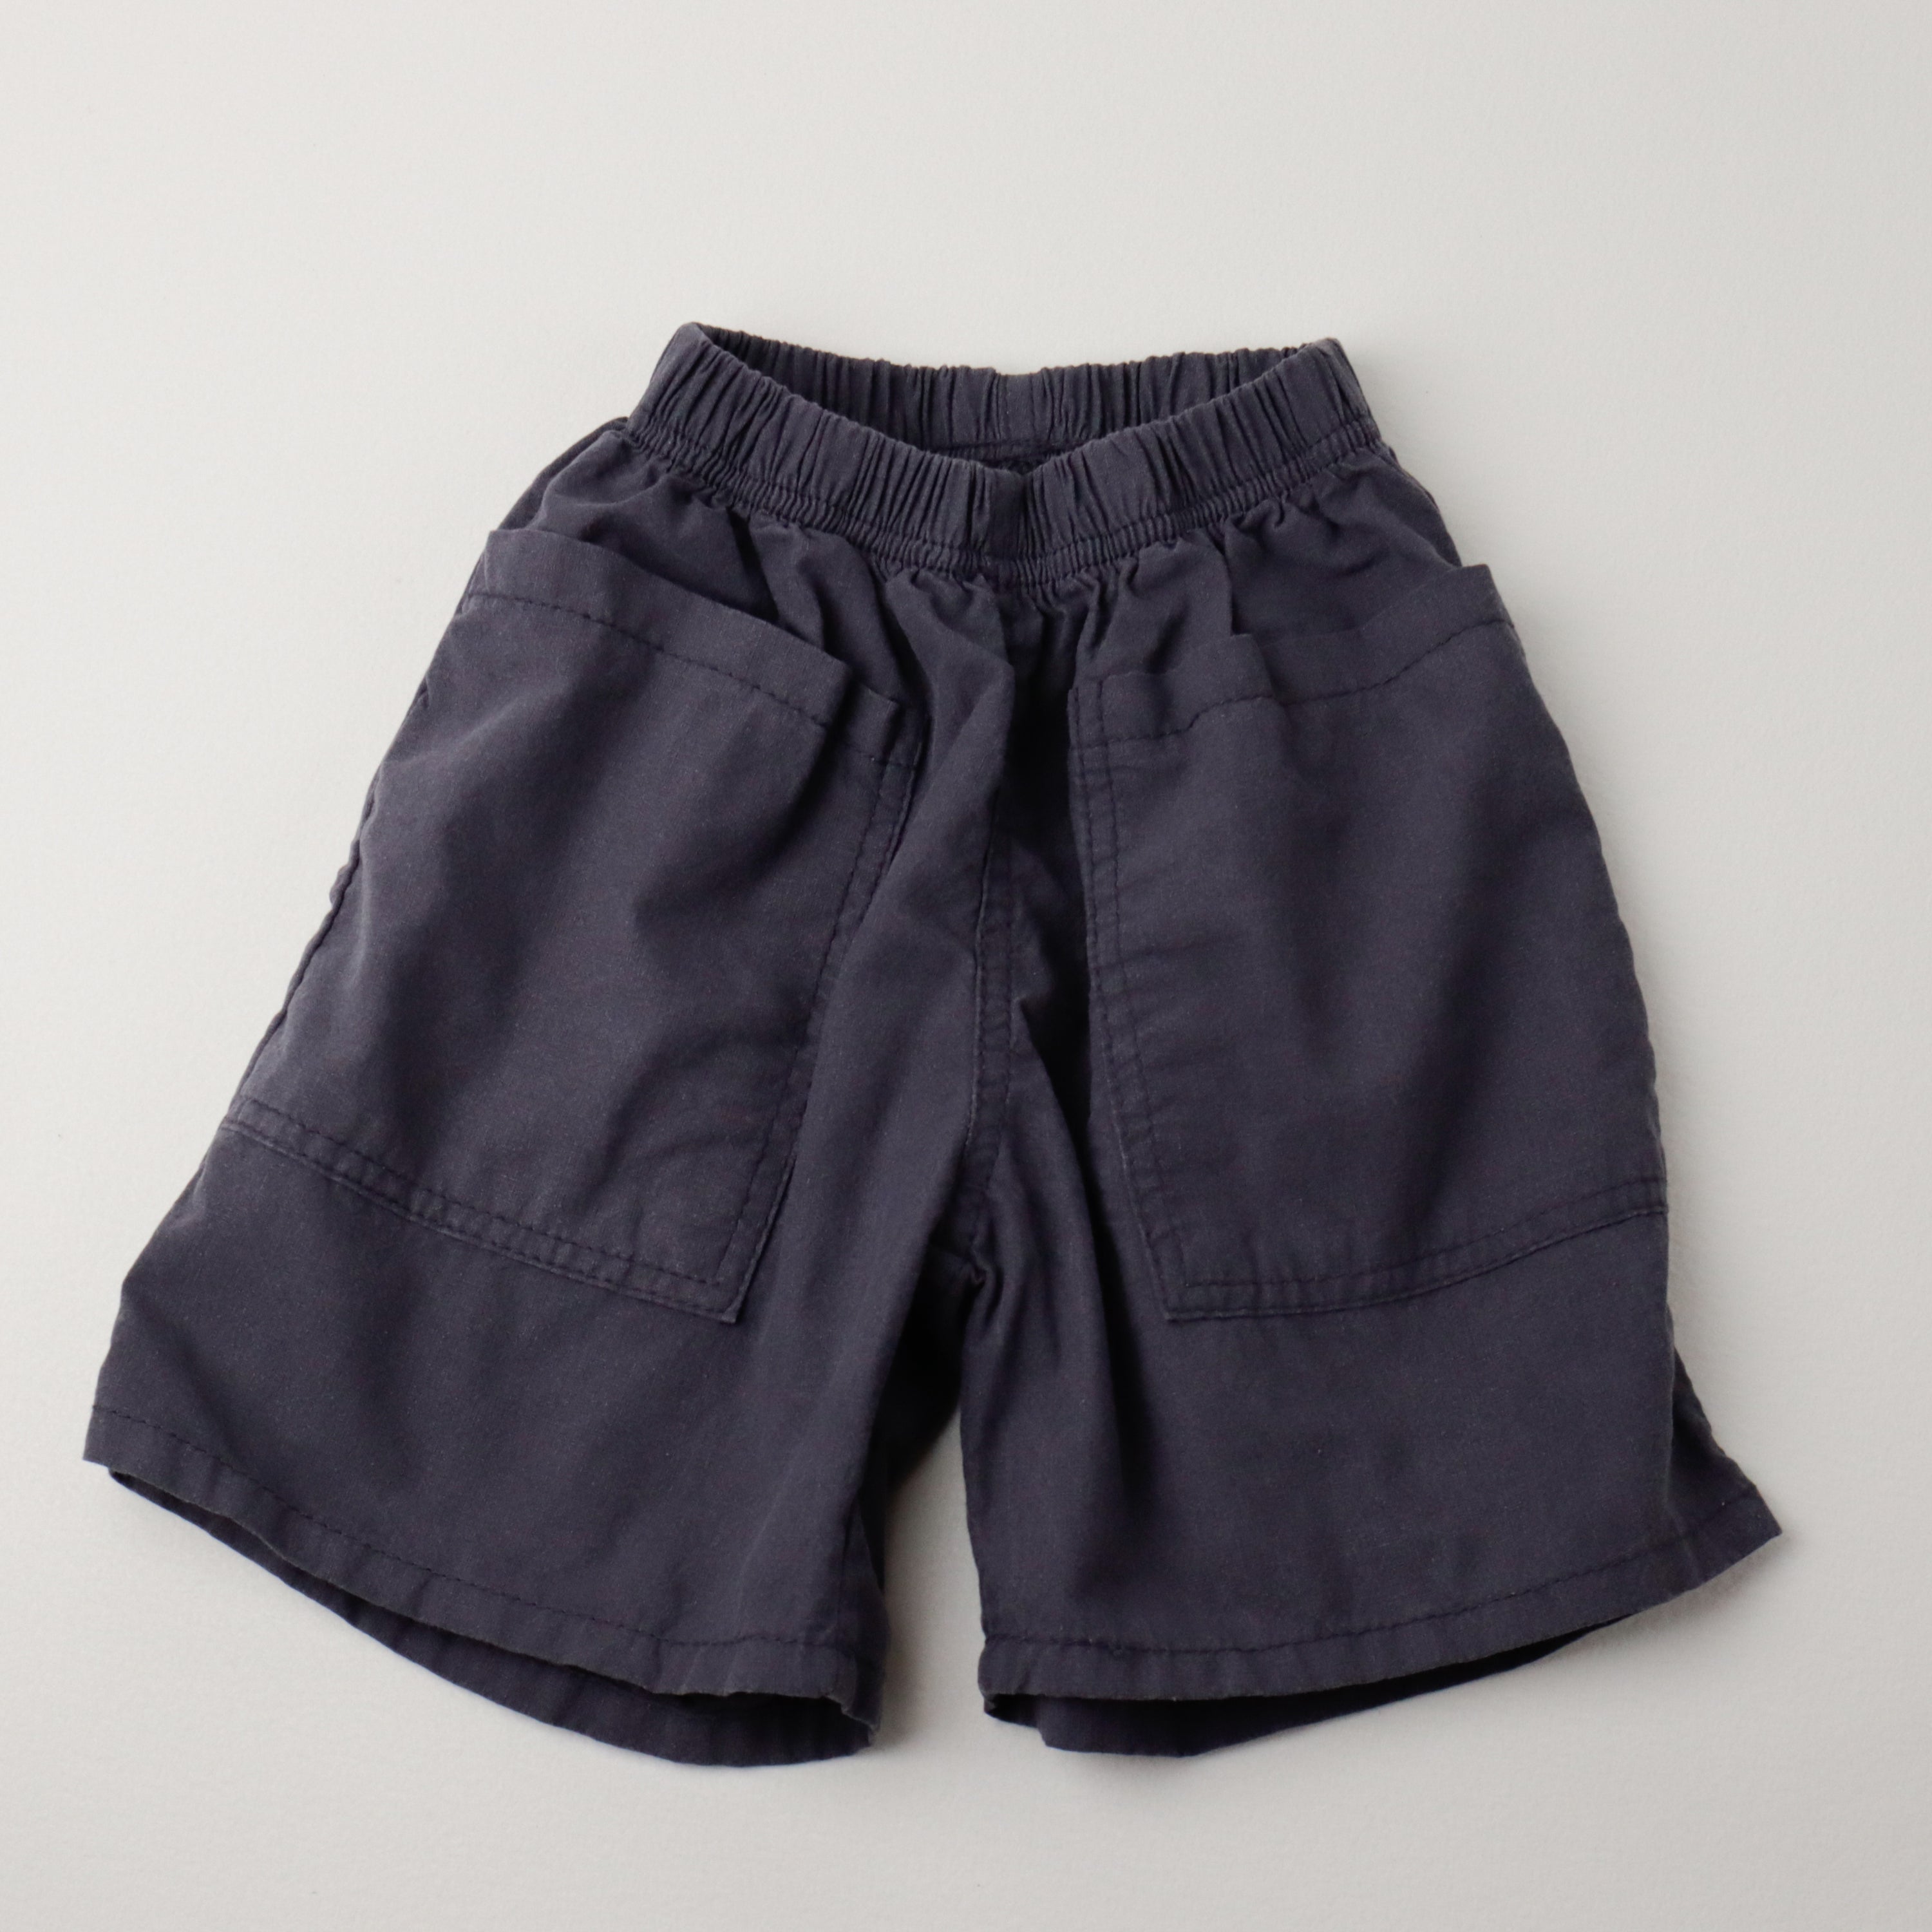 Churros Square Pocket Cotton Shorts (Ready Stock)